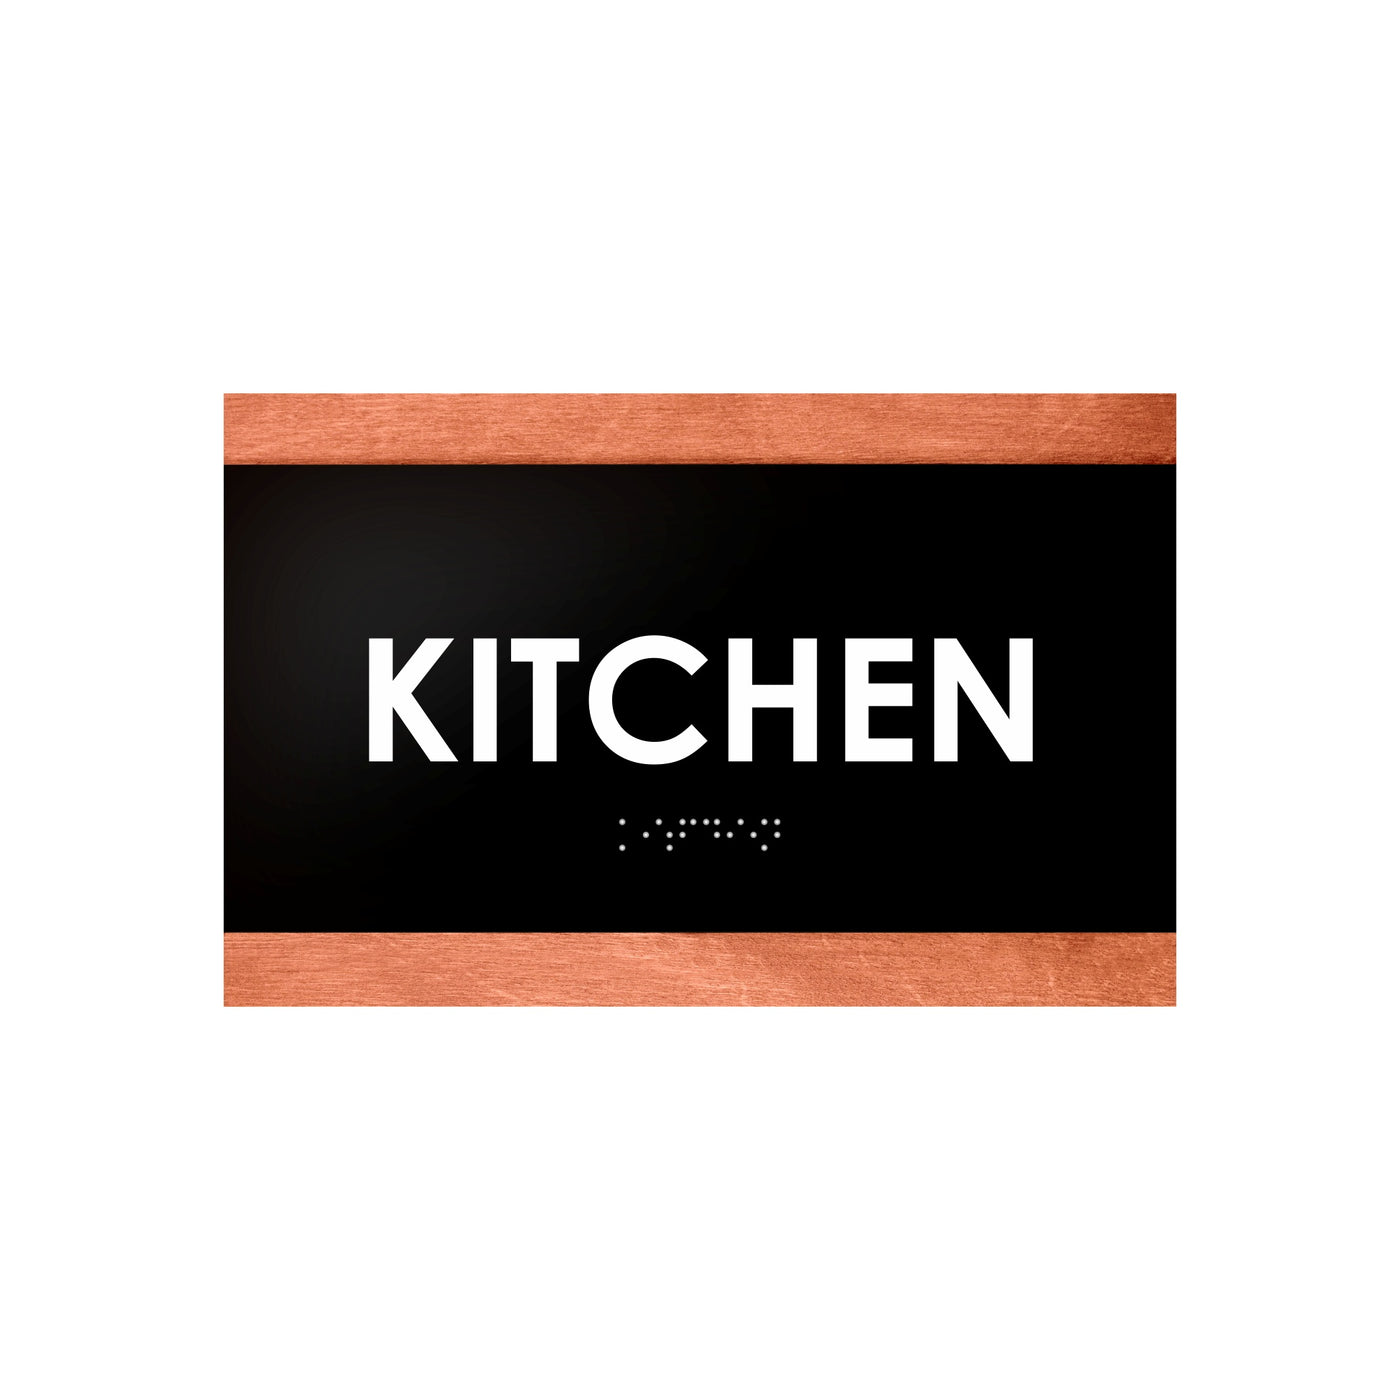 Wood Door Sign for Kitchen Room "Buro" Design